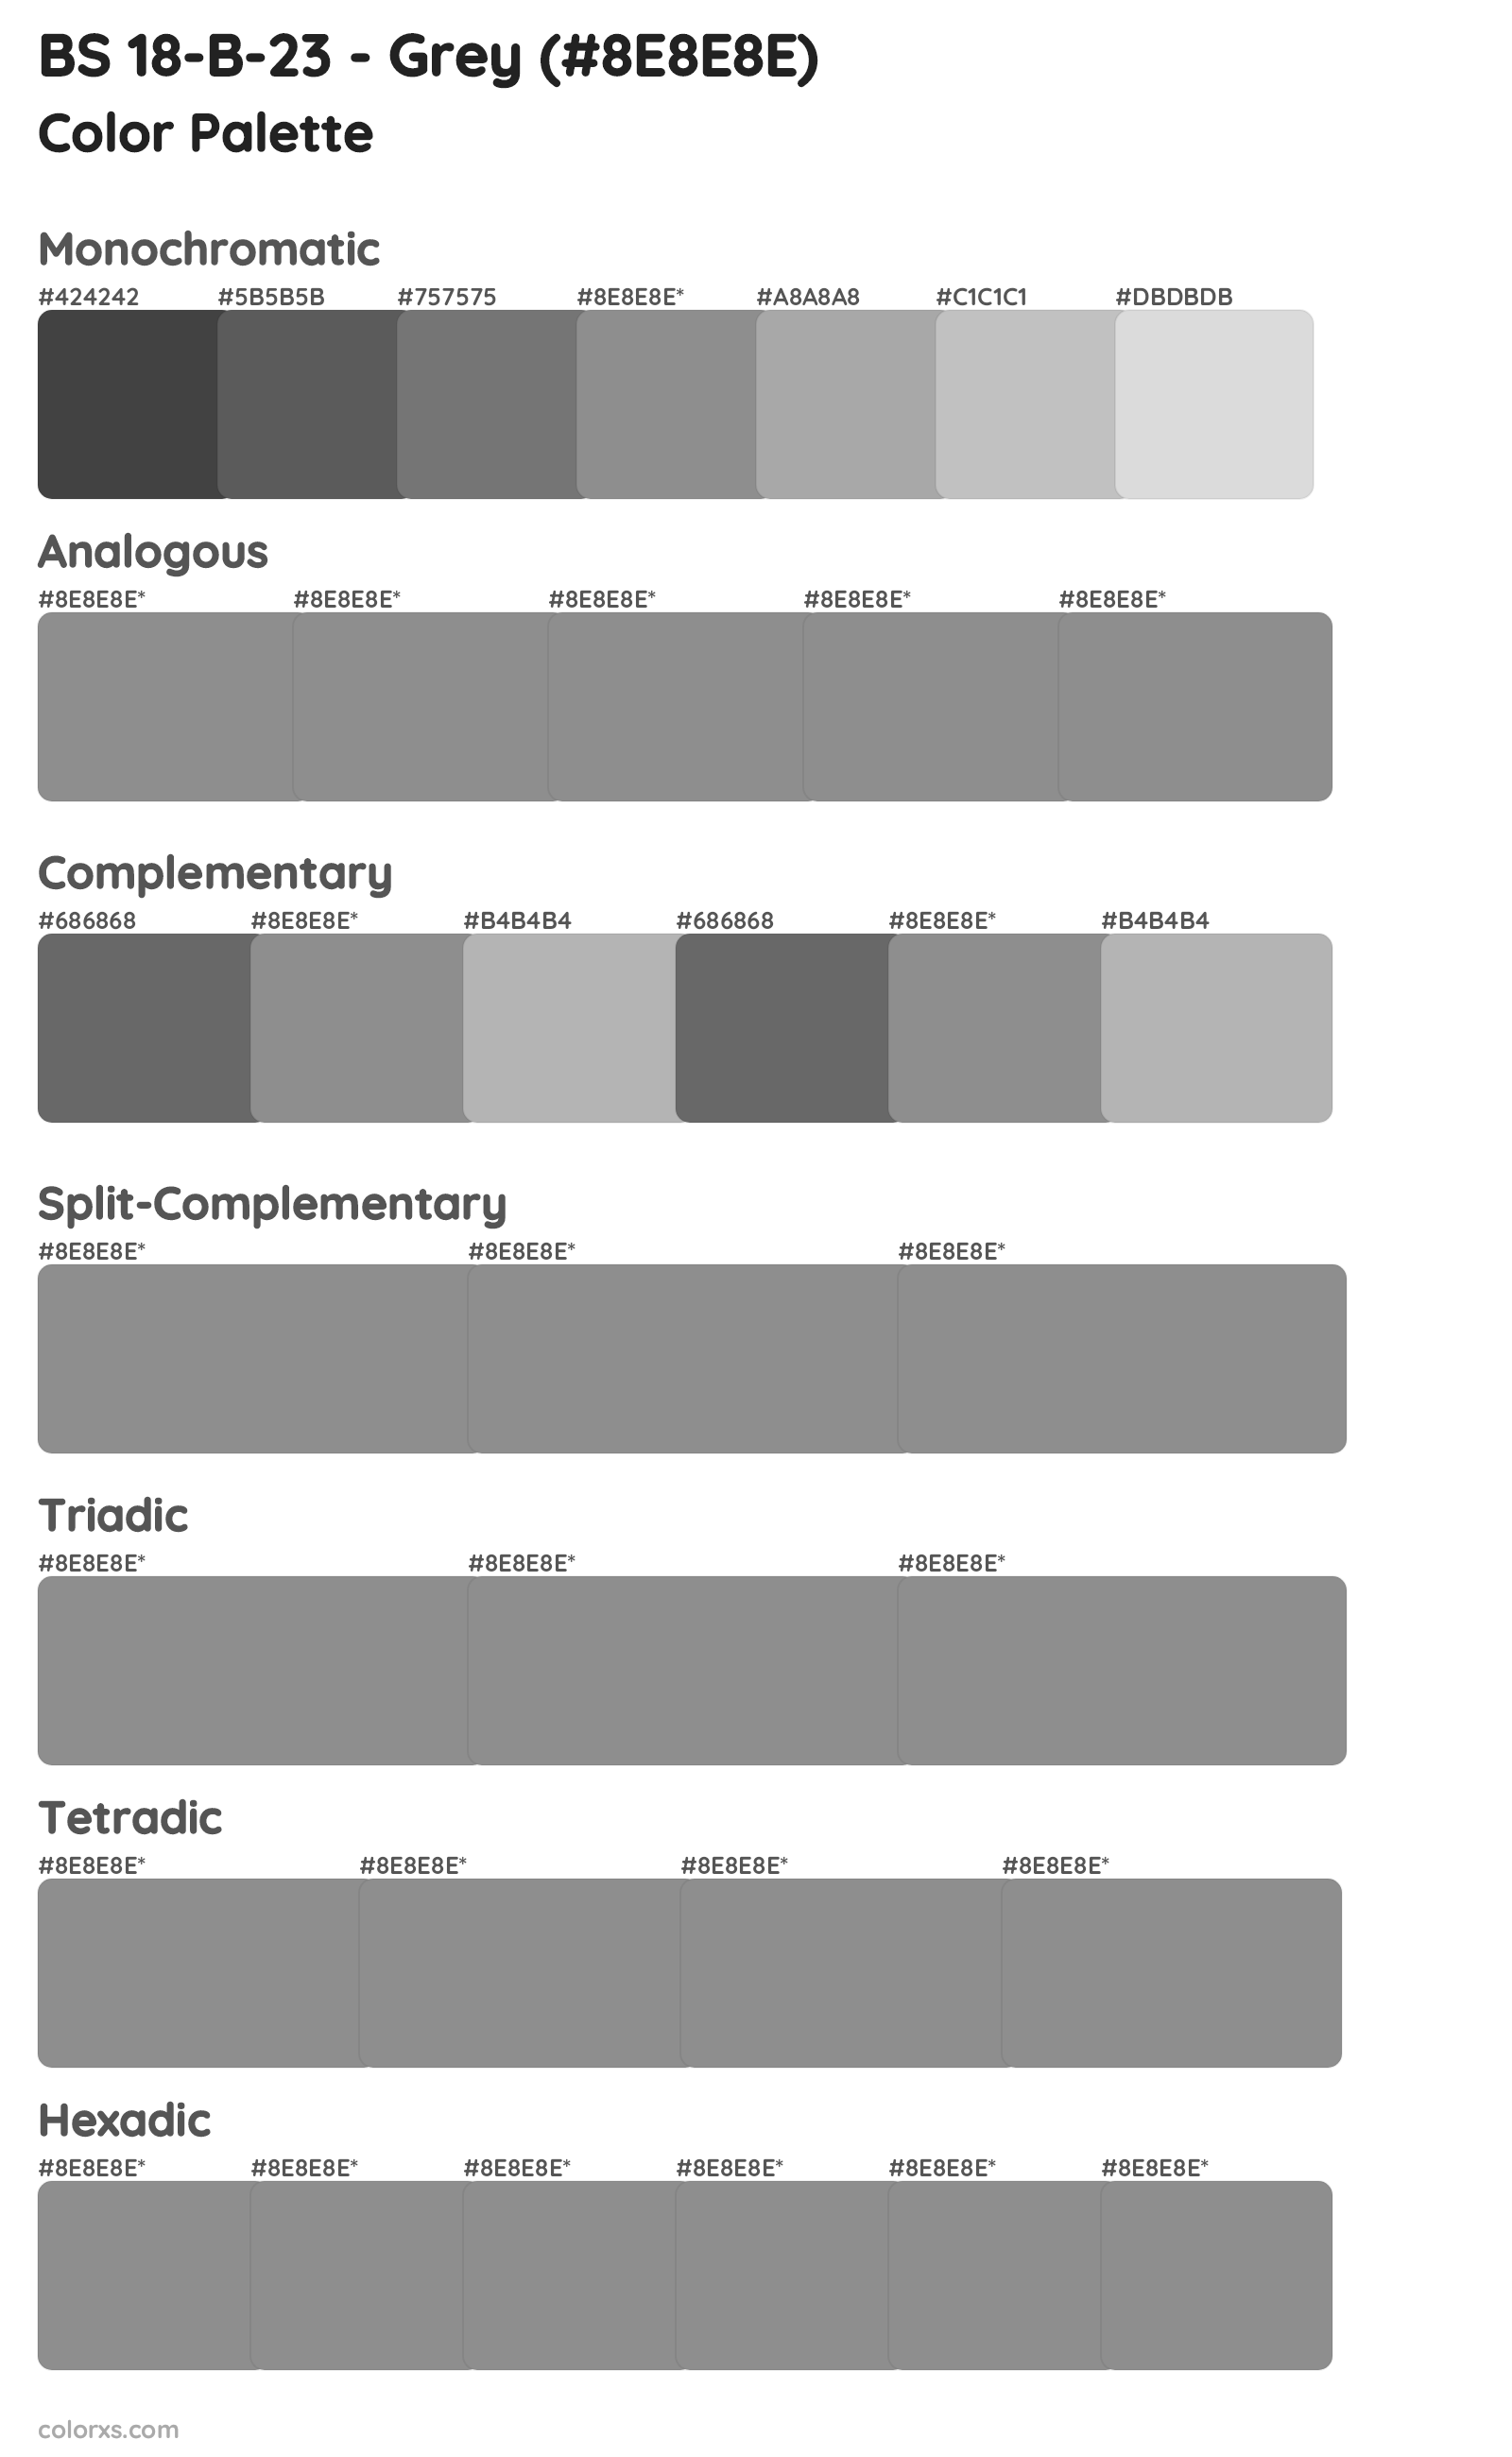 BS 18-B-23 - Grey Color Scheme Palettes